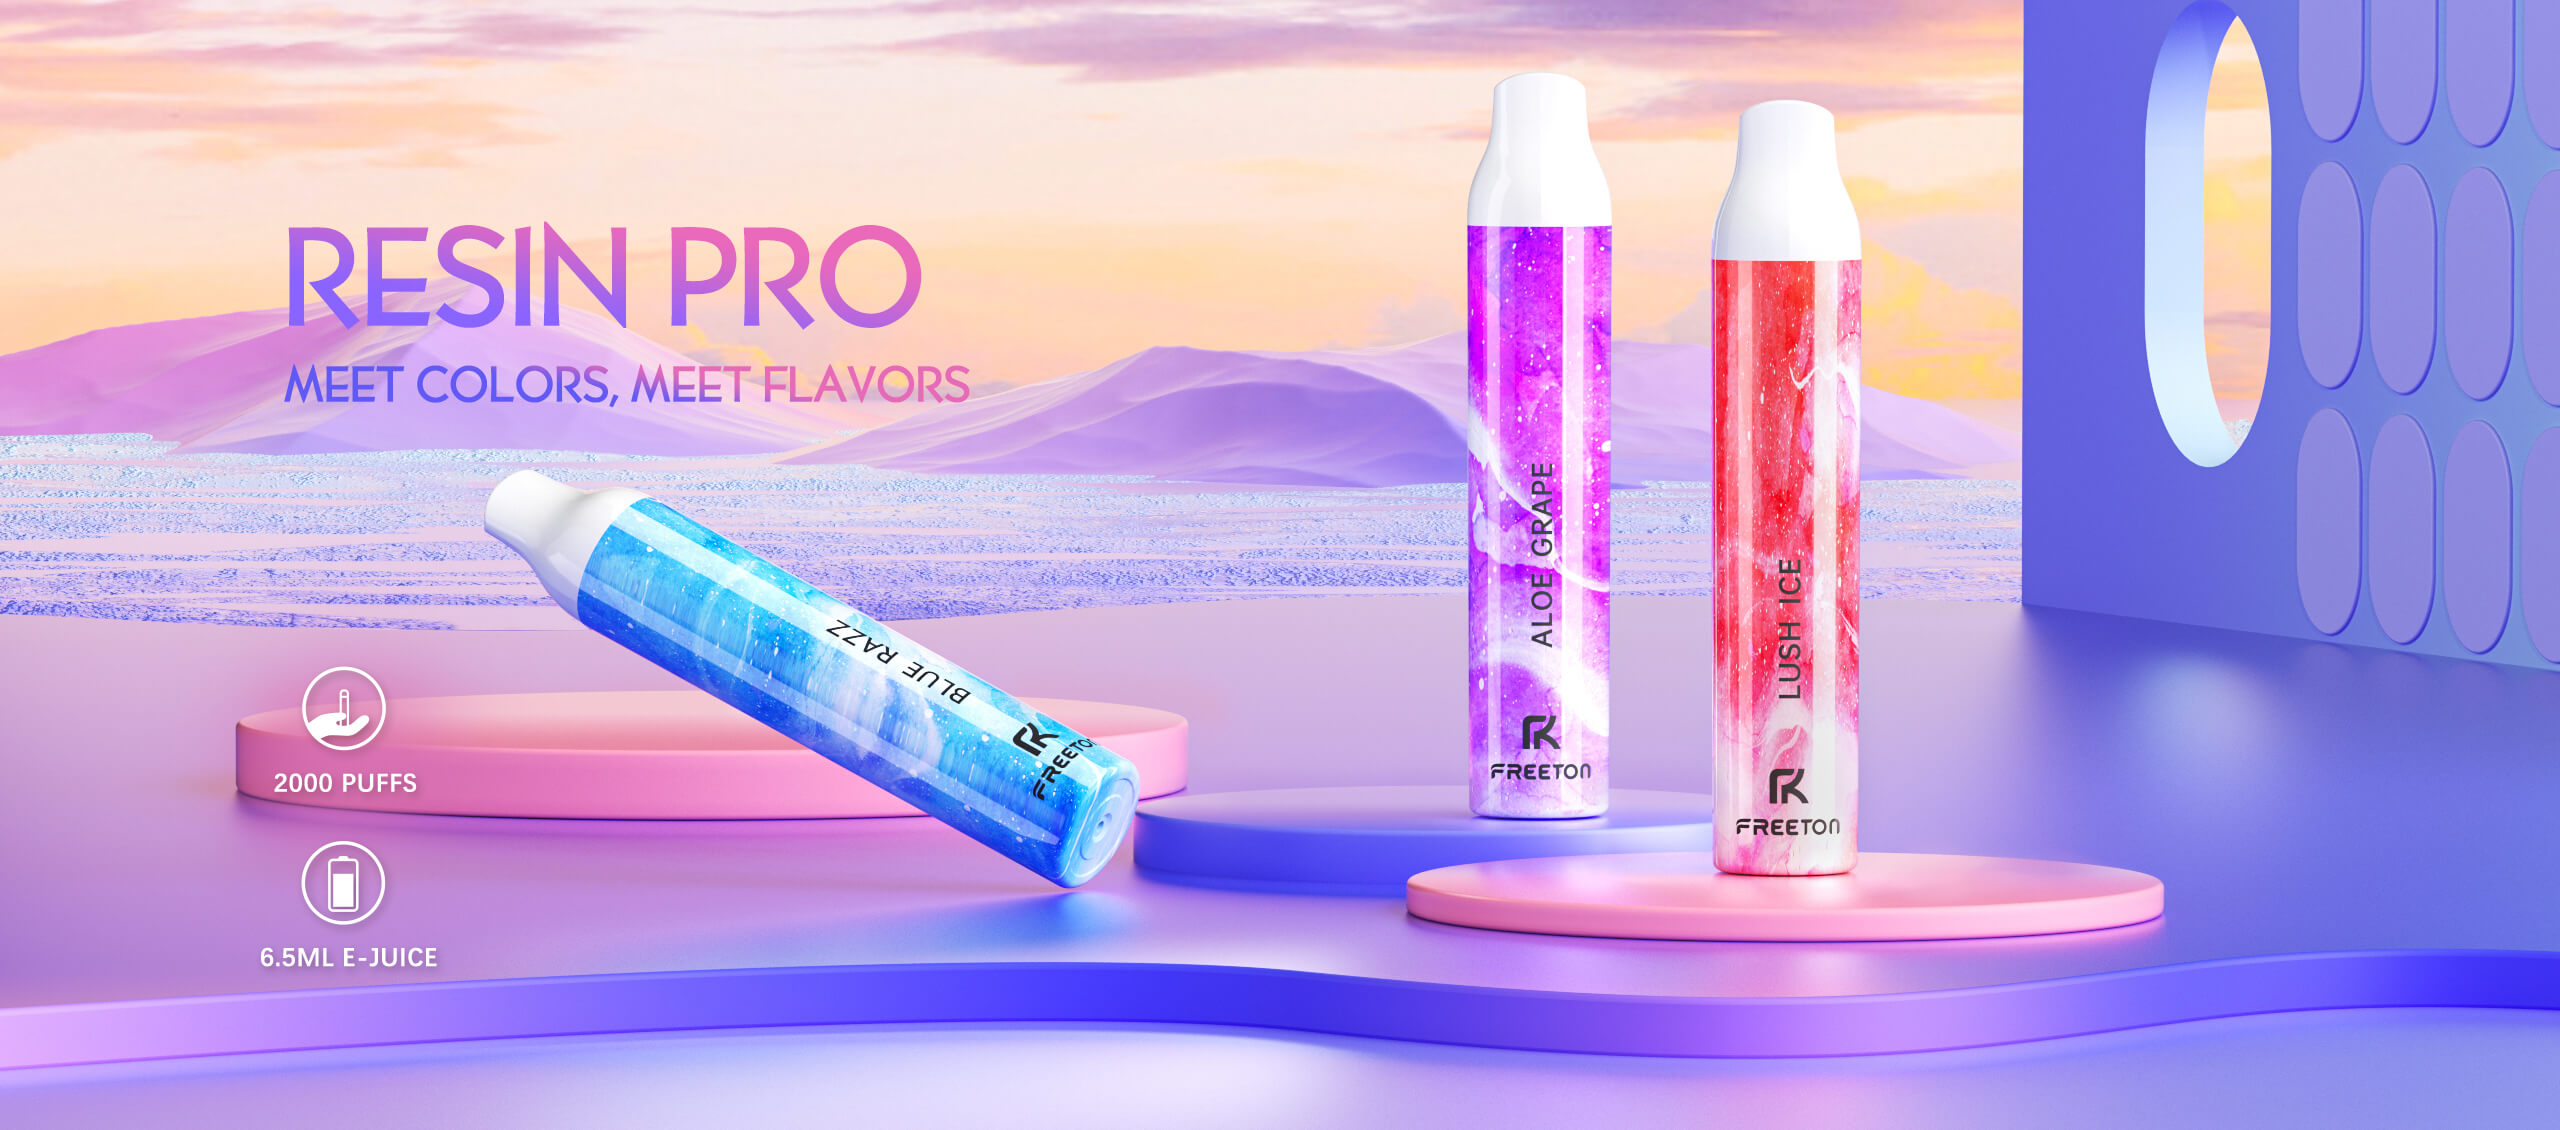 RESIN PRO  Freeton-Premium Disposable E-cigarette Brand